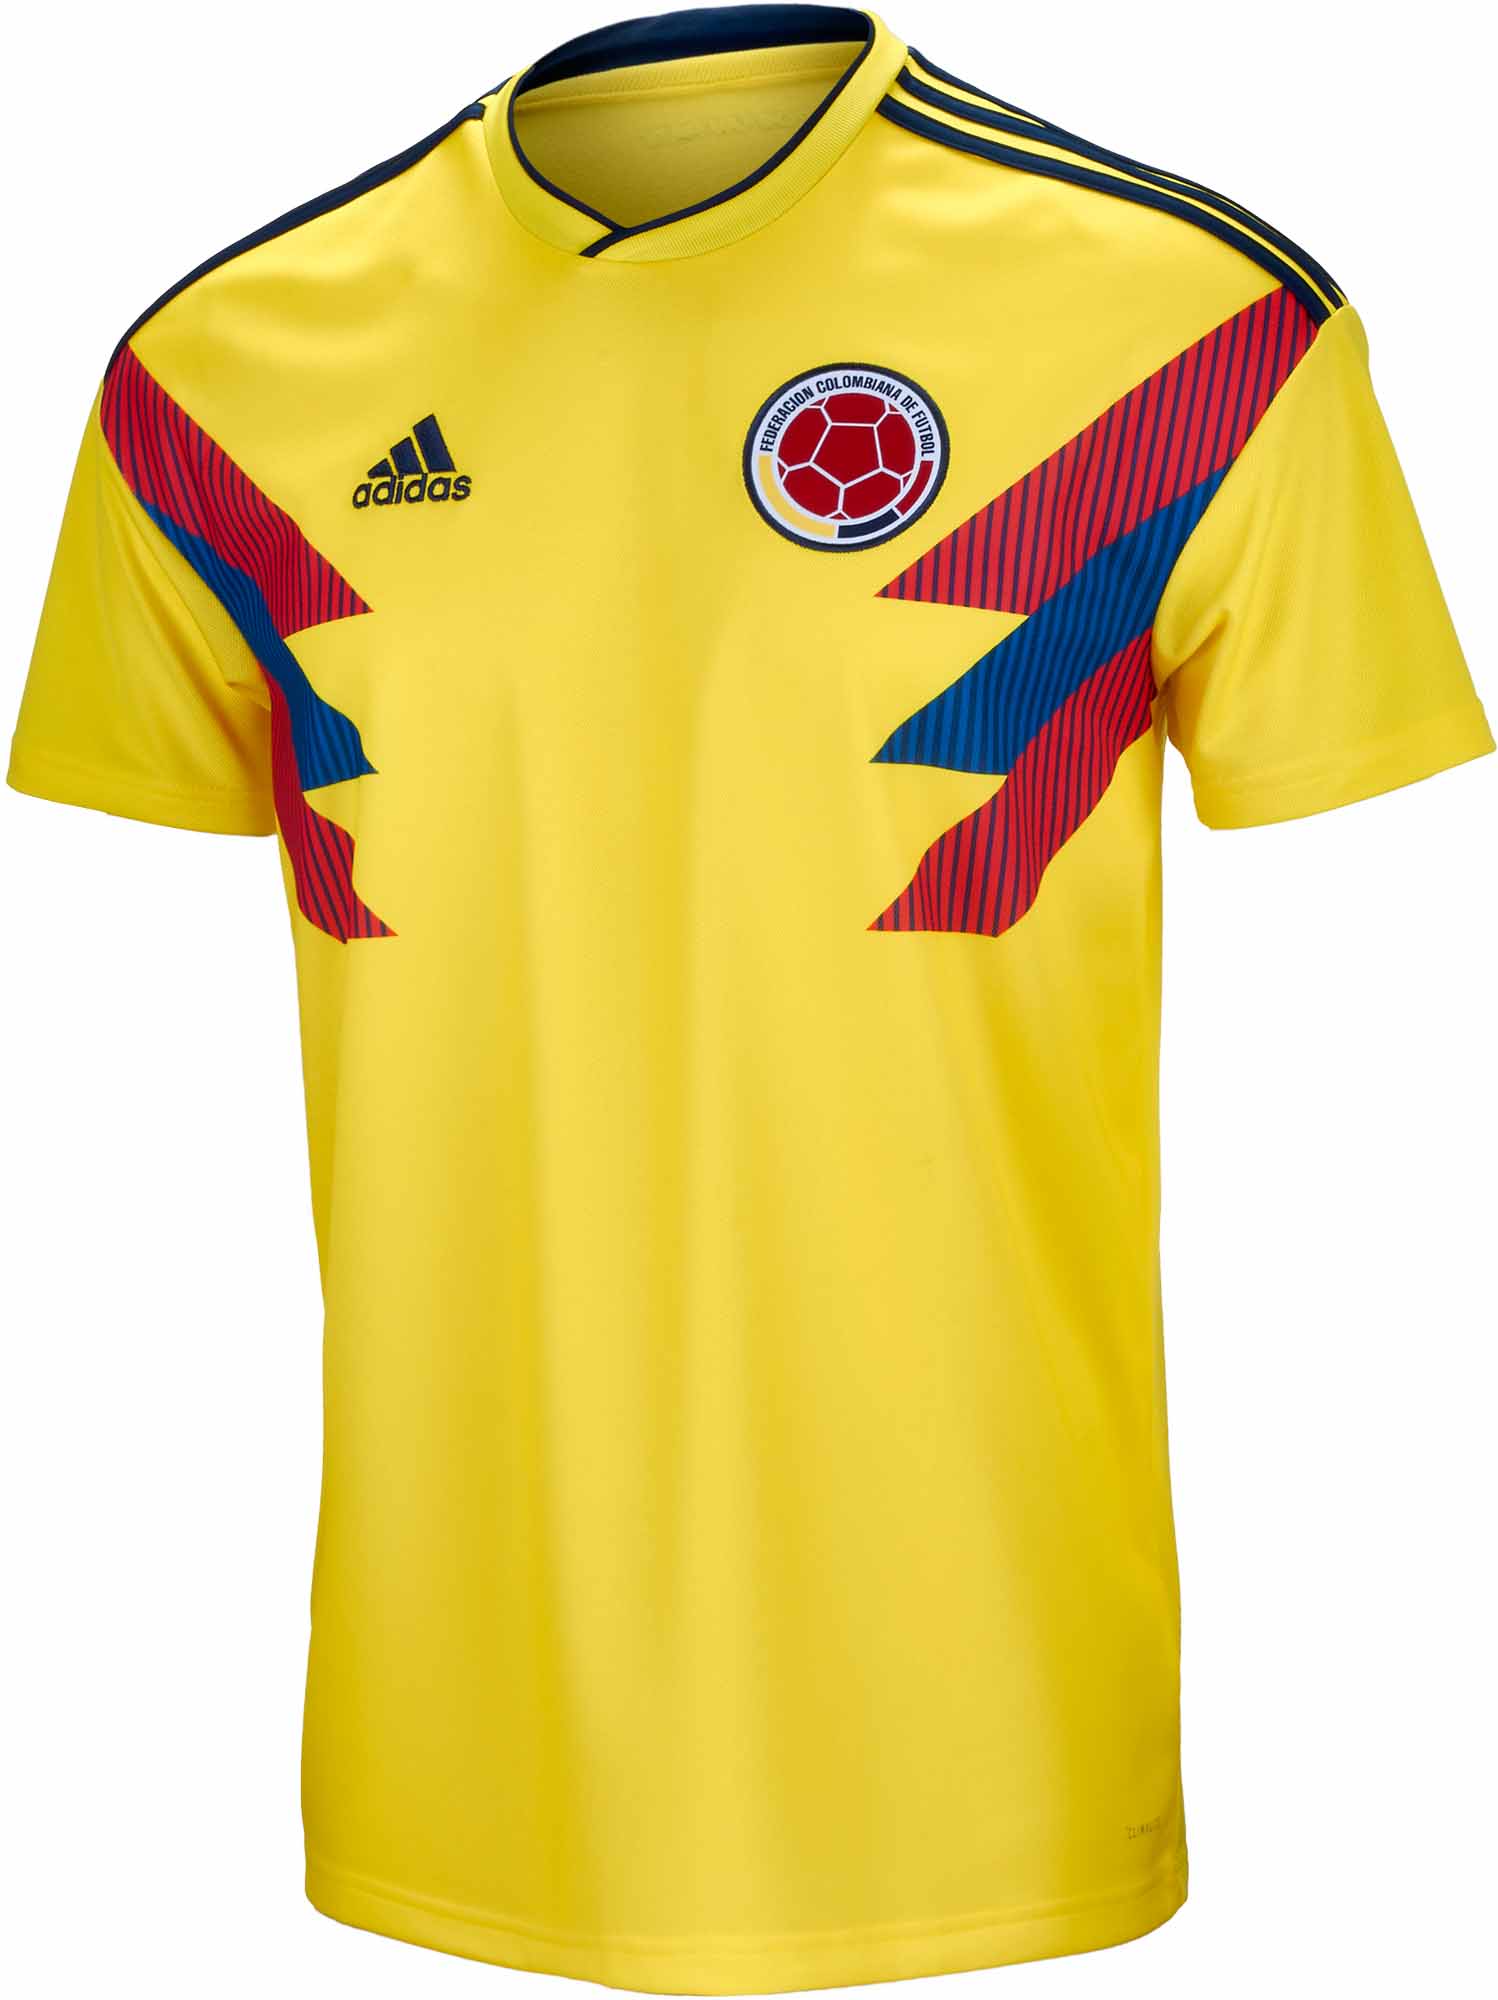 Benachrichtigung Ankündigung Ehrgeizig colombia soccer team jersey 2018 ...